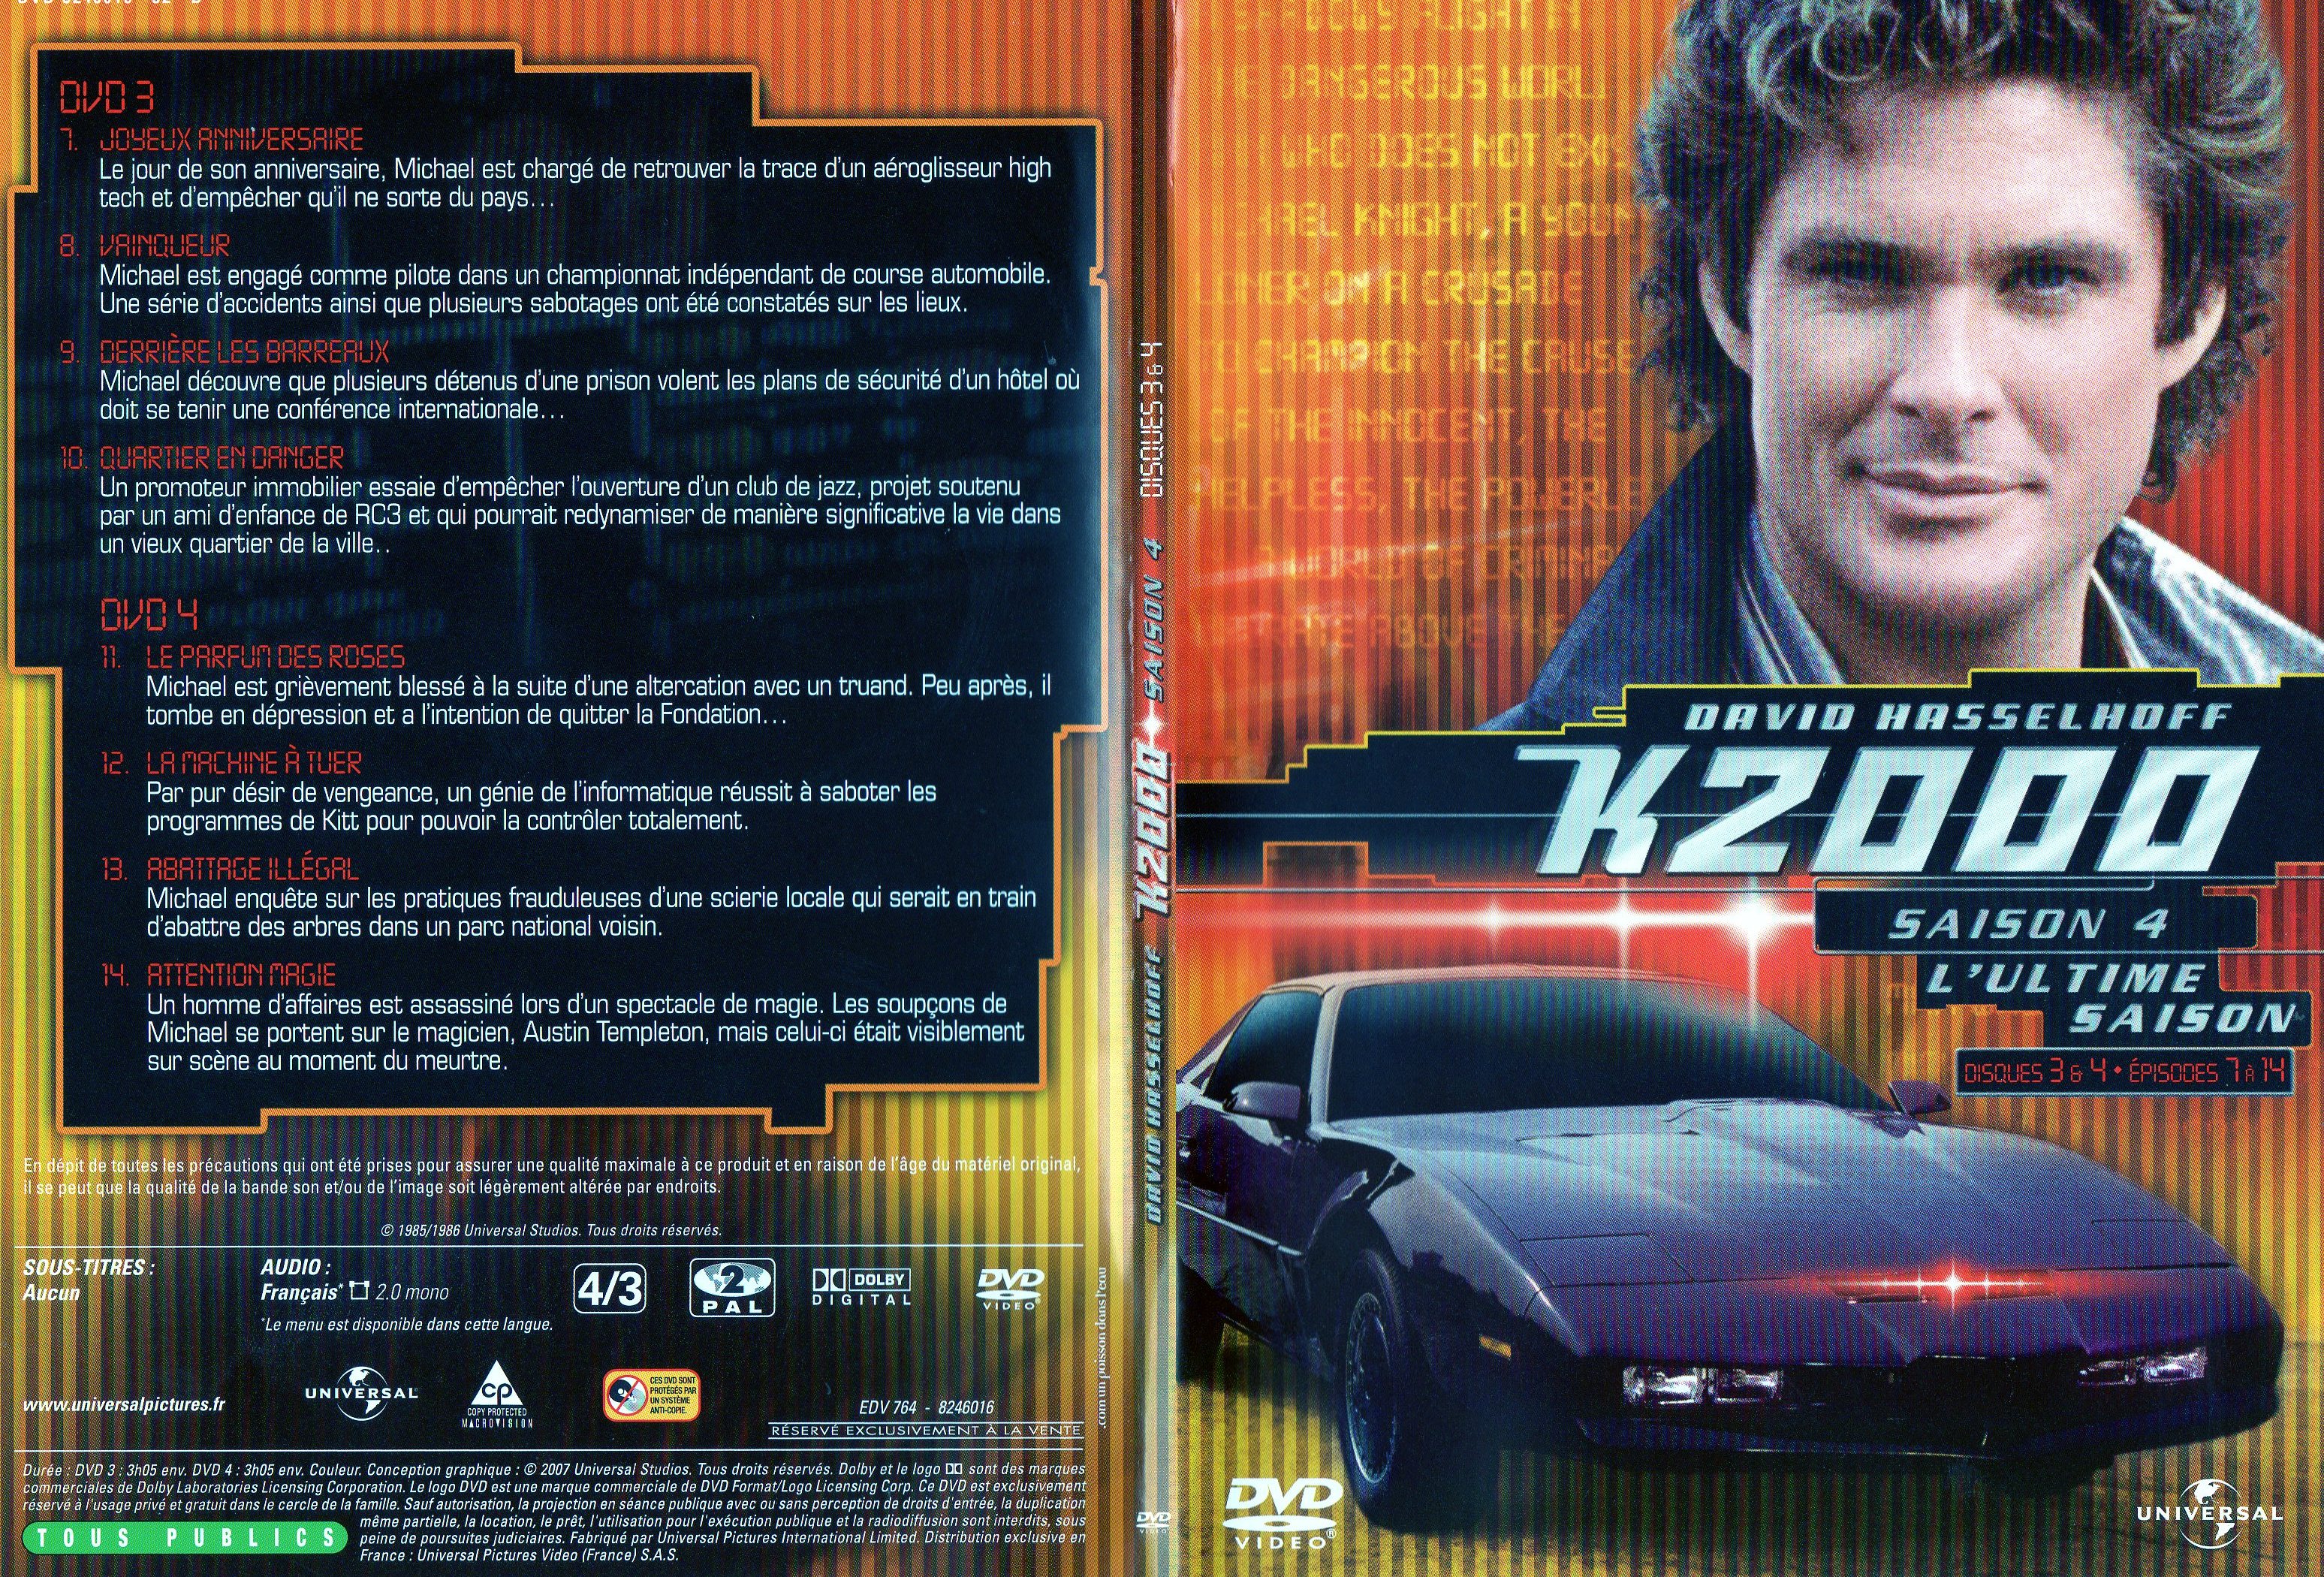 Jaquette DVD K2000 Saison 4 DVD 3 et 4